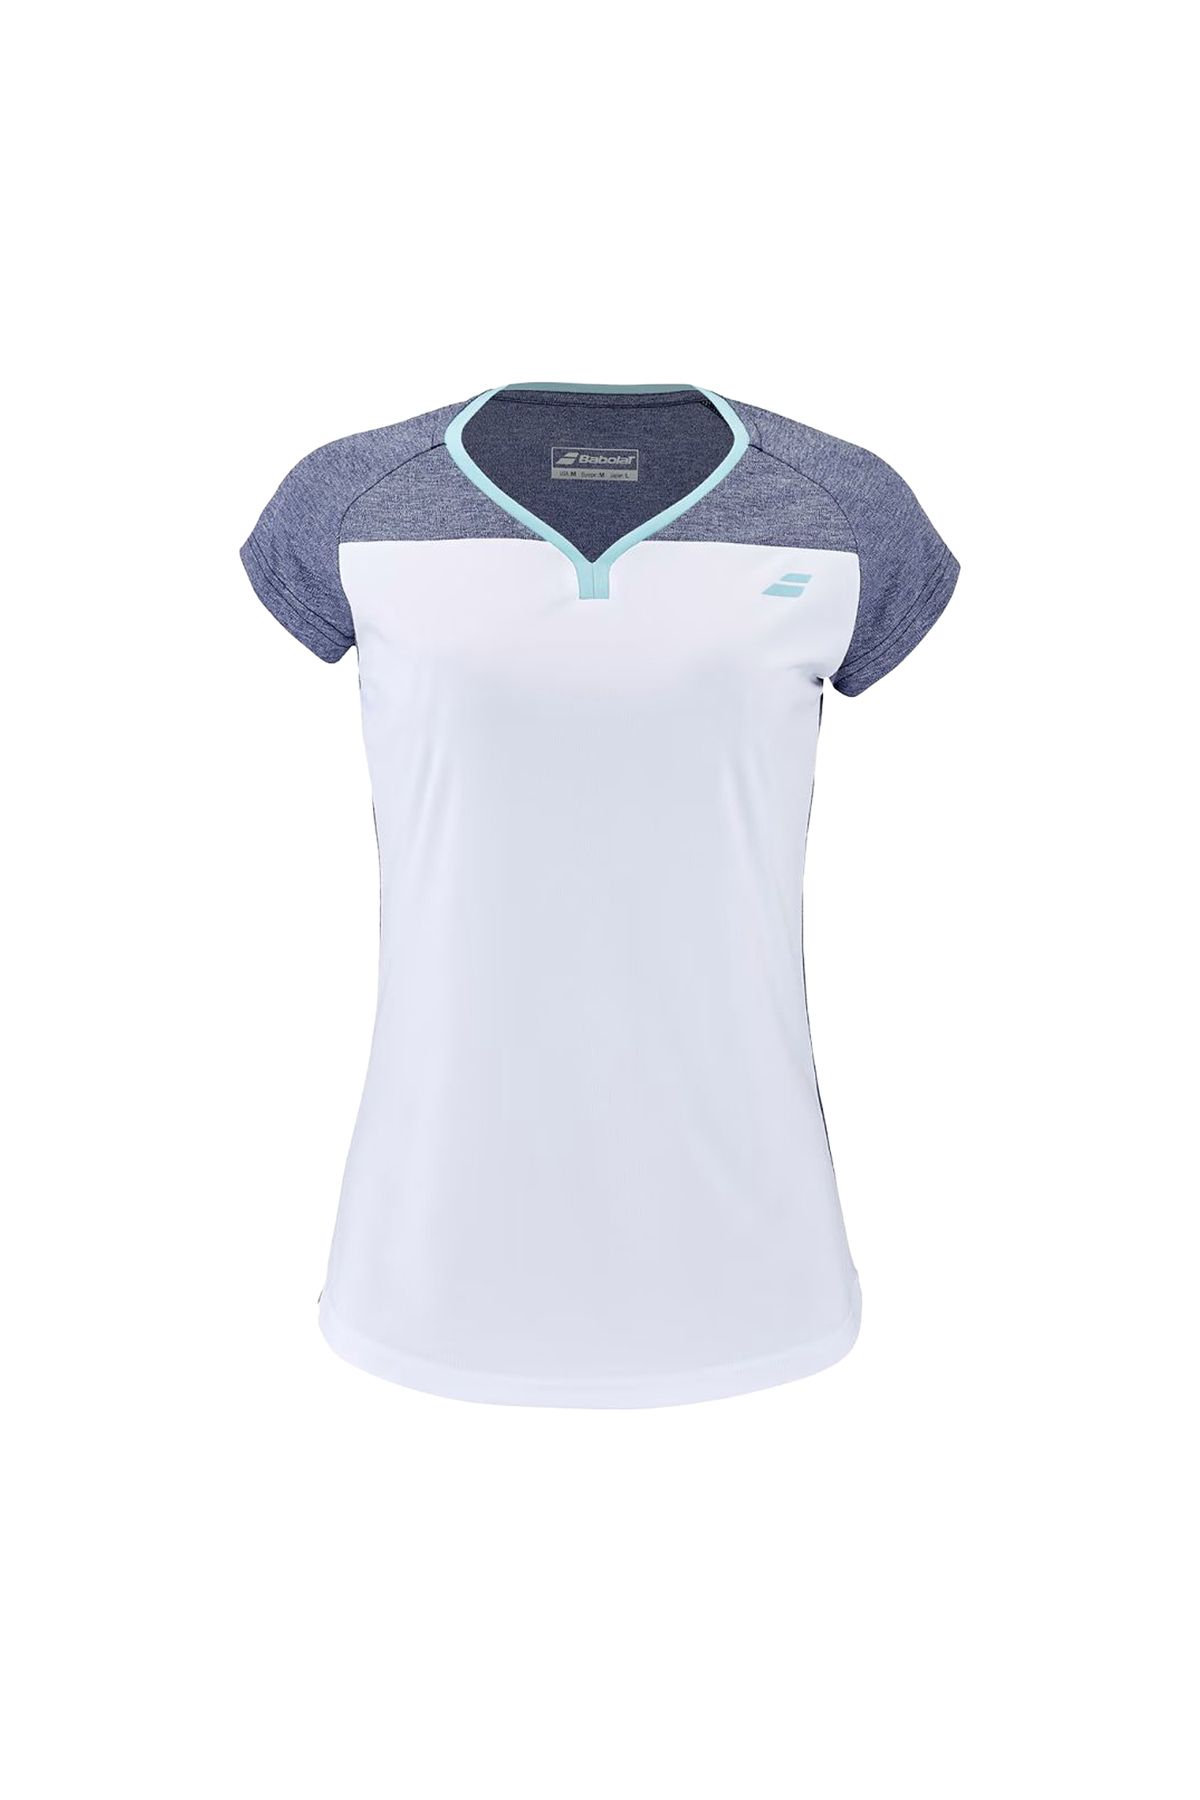 BABOLAT Cap Sleeve Top Kadın Tenis Tişört